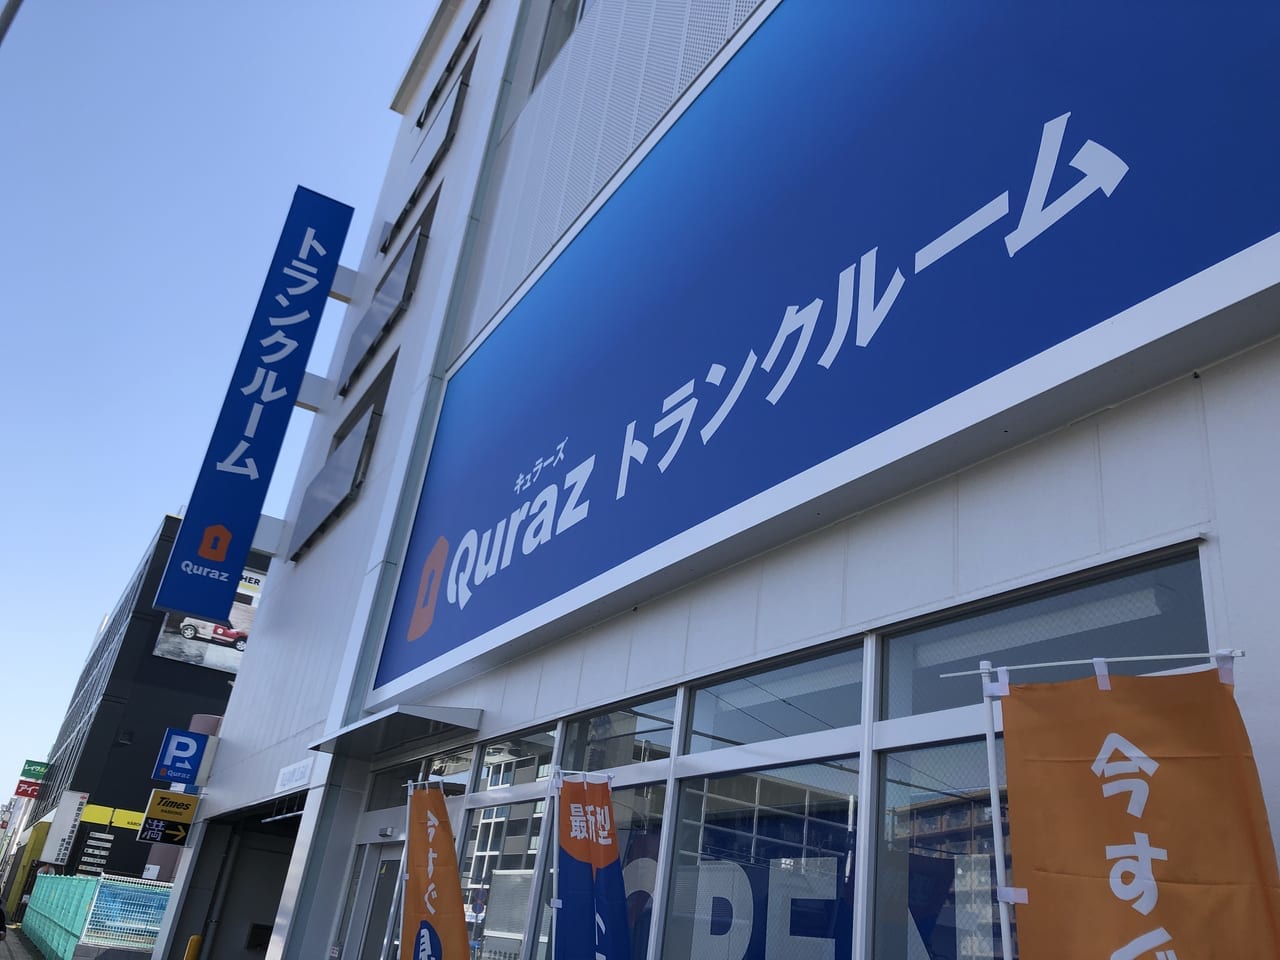 キュラーズ新横浜店